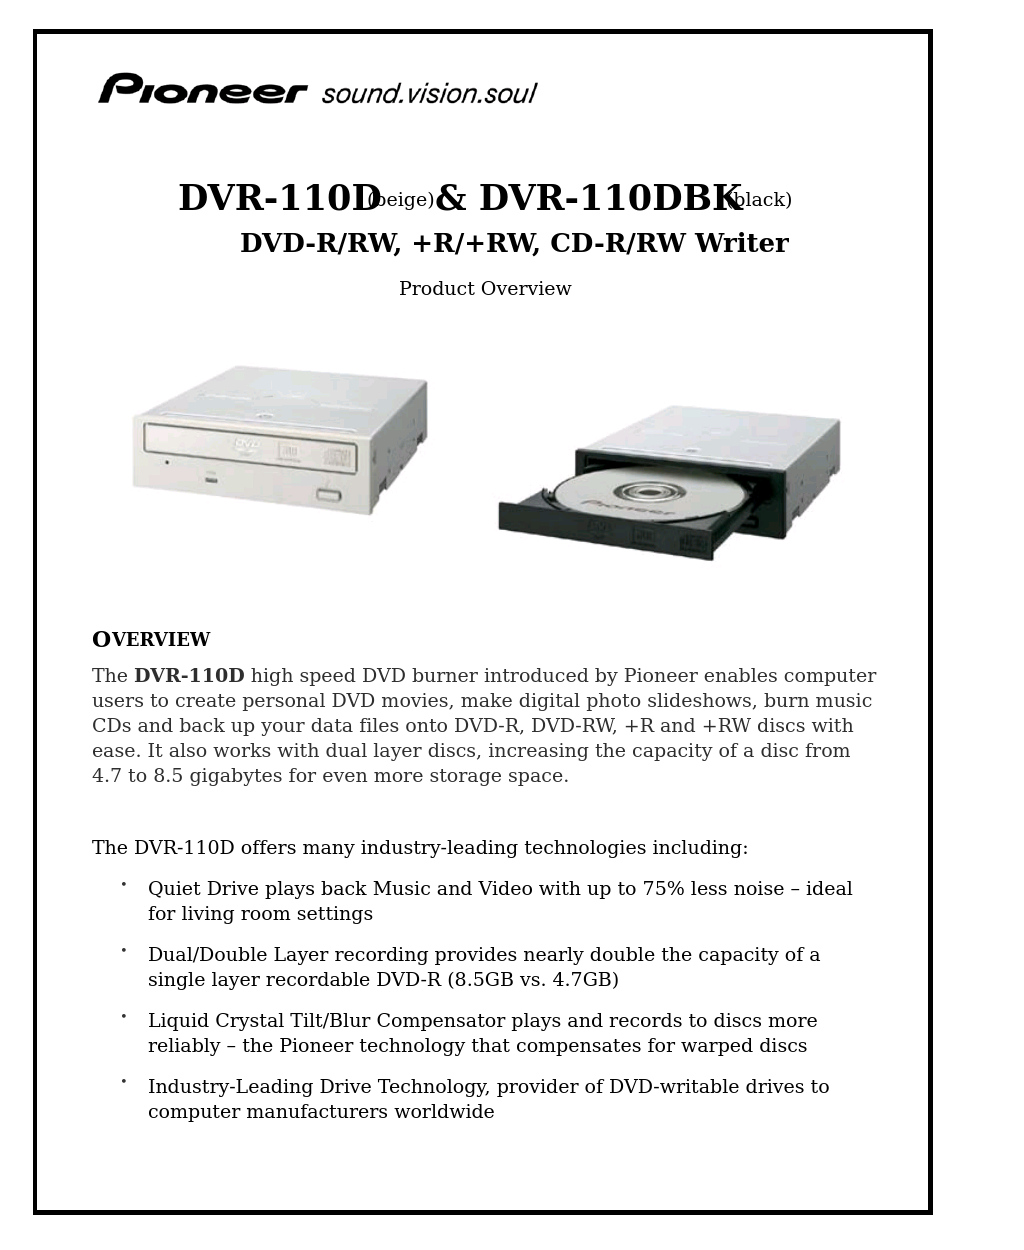 DVR-110D